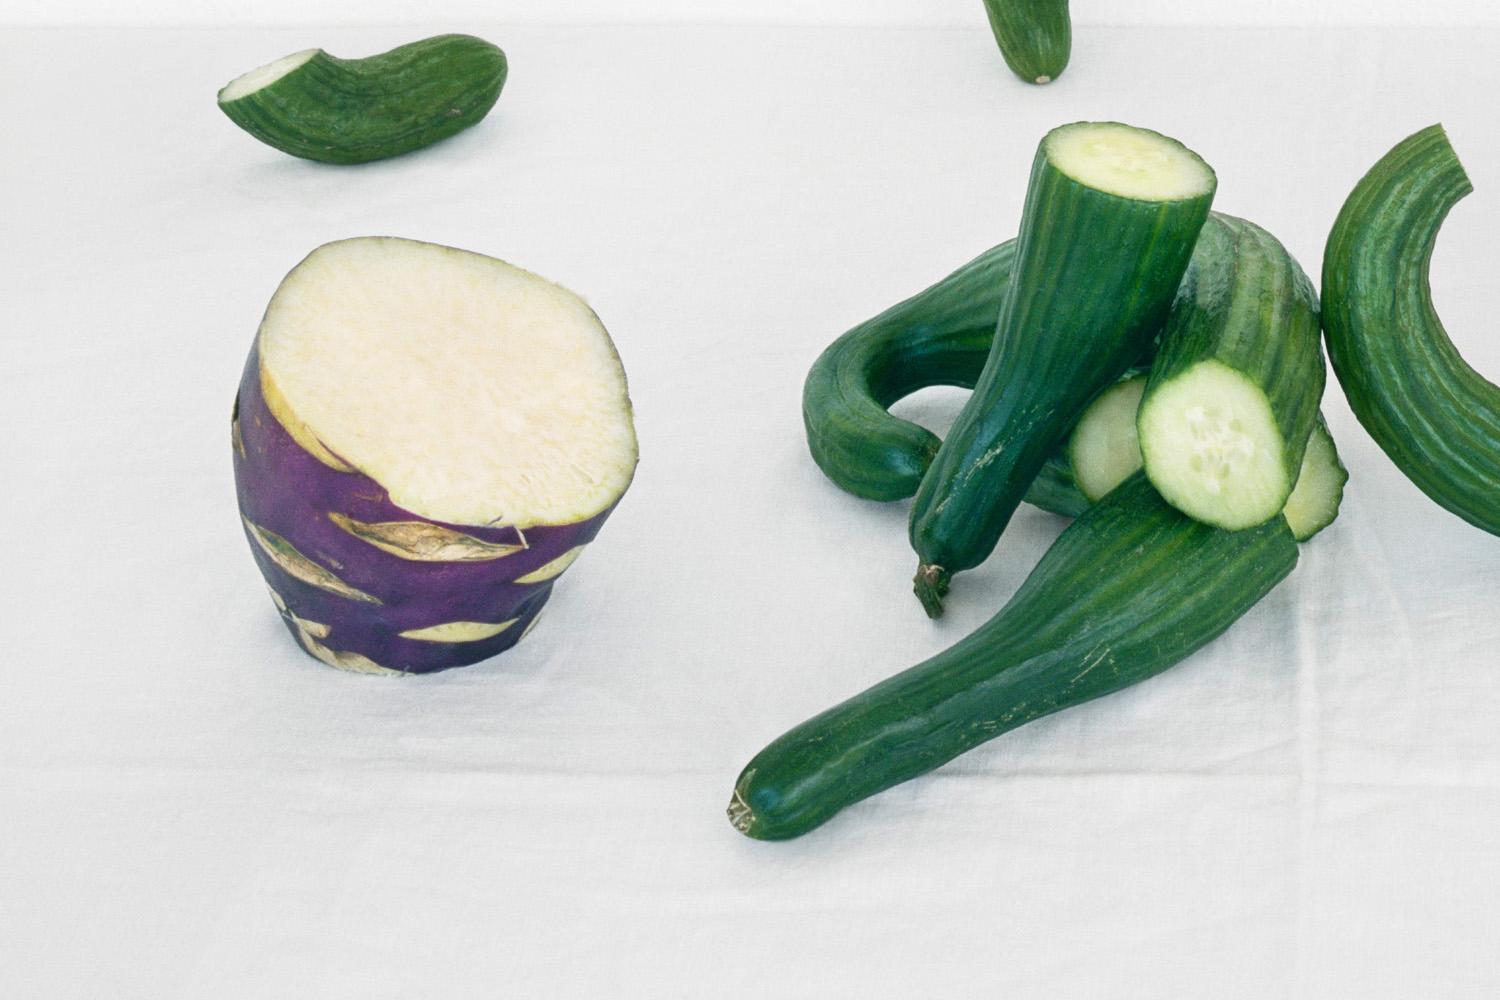 Cucumbers & Kohlrabi: Farb-Stillleben-Fotografie von lila und grünen Gemüse (Zeitgenössisch), Photograph, von David Halliday